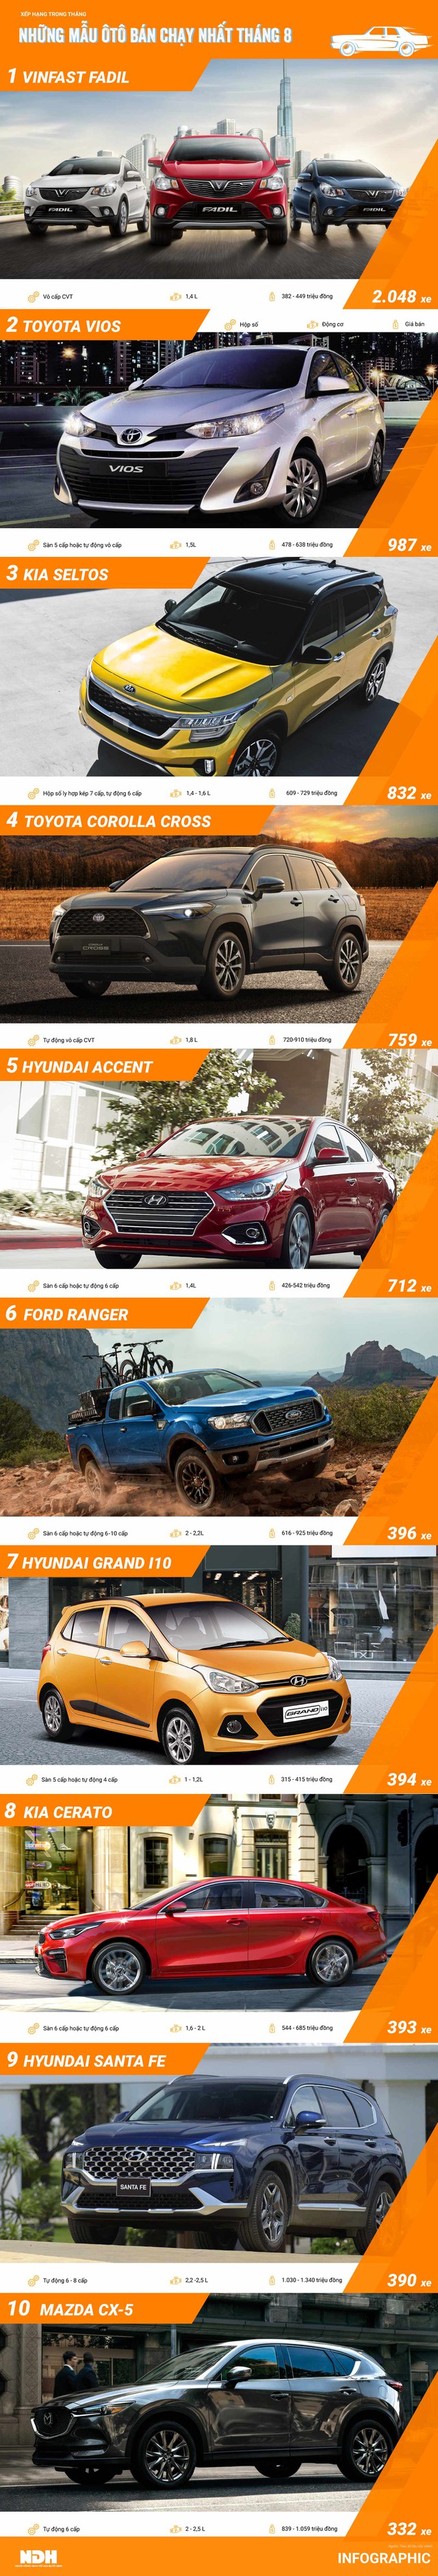 Ôtô bán chạy nhất tháng 8: Doanh số của VinFast Fadil gấp đôi Toyota Vios - Ảnh 1.